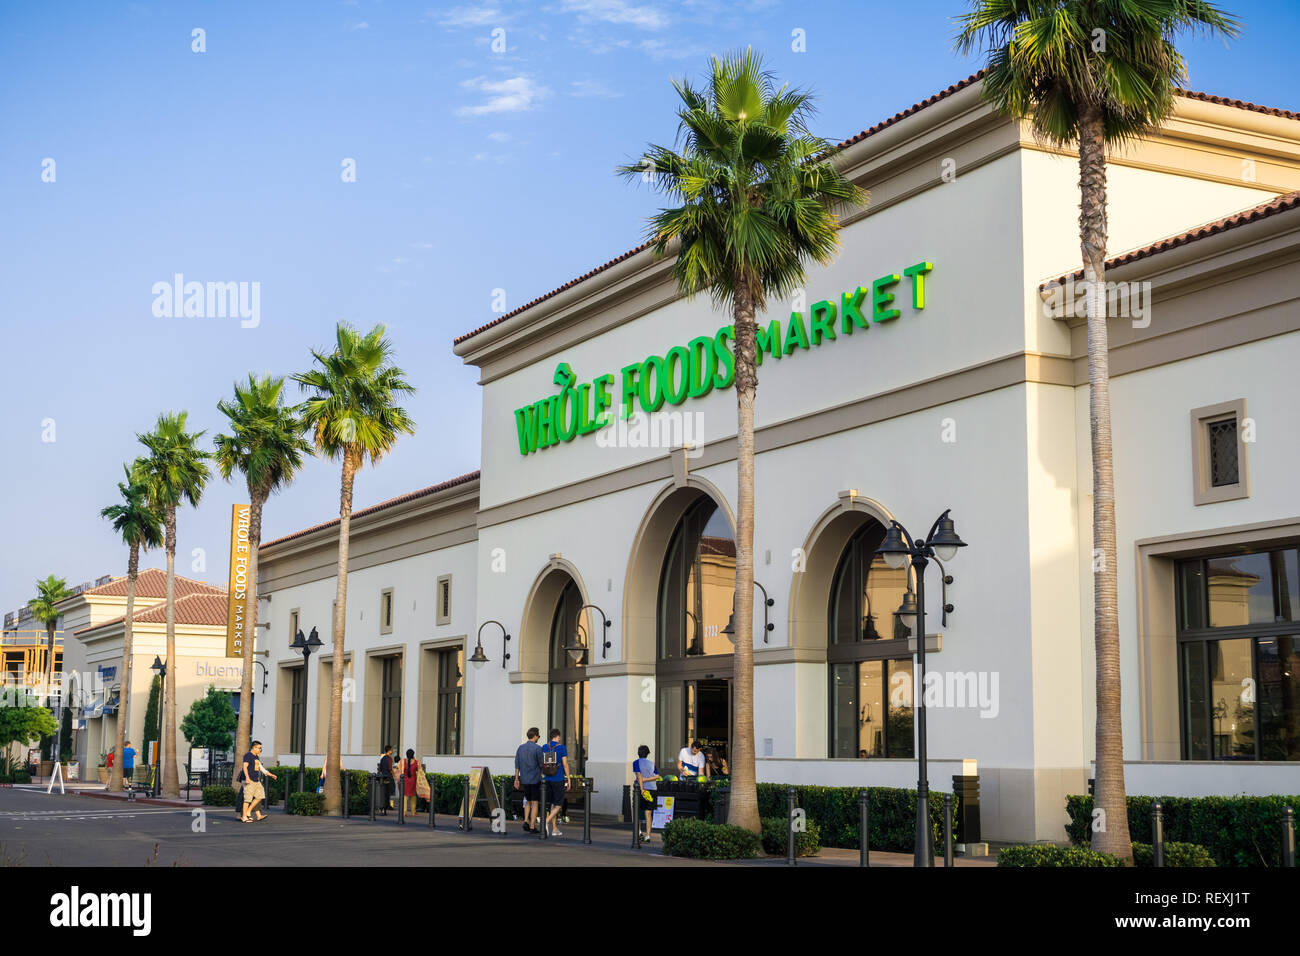 2 Septembre, 2017 Santa Clara/CA/USA - Personnes shopping dans le supermarché Whole Foods, situé à Santa Clara Square Marketplace , South San Francisco Banque D'Images